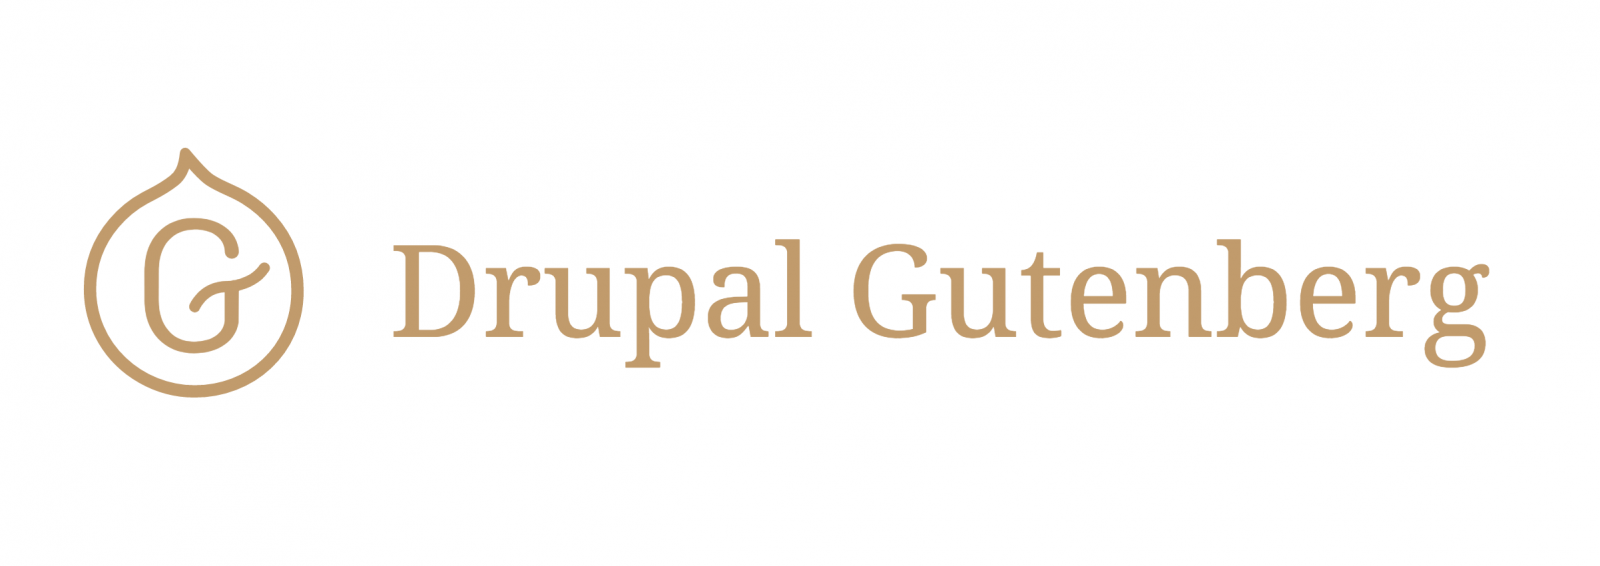 Drupal Gutenberg Showcased at DrupalCamp Oslo 2018